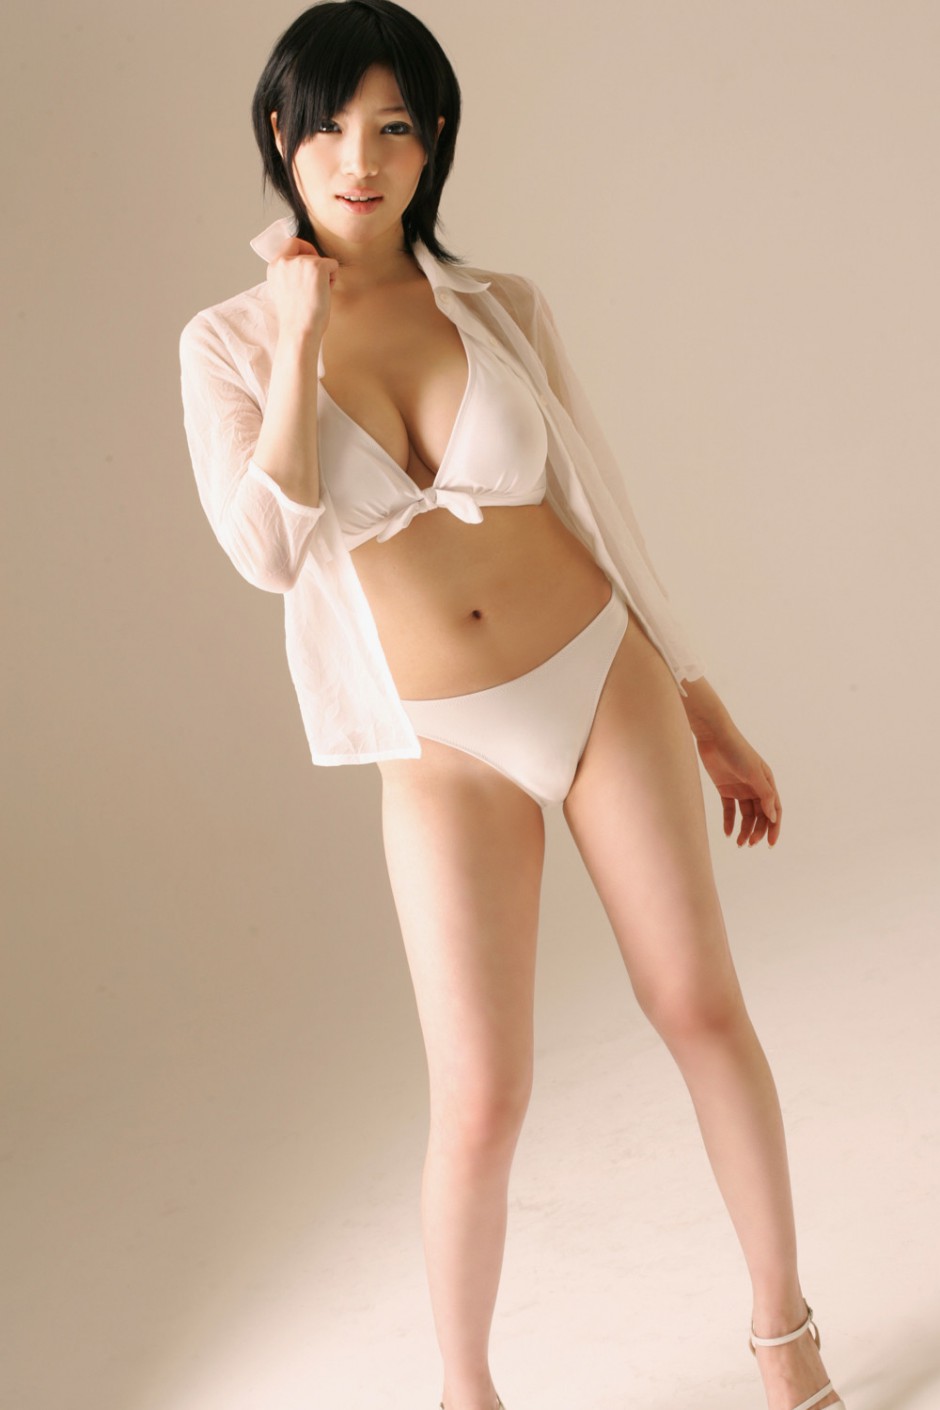 日本大胸翘臀美女模特森下悠里性感写真